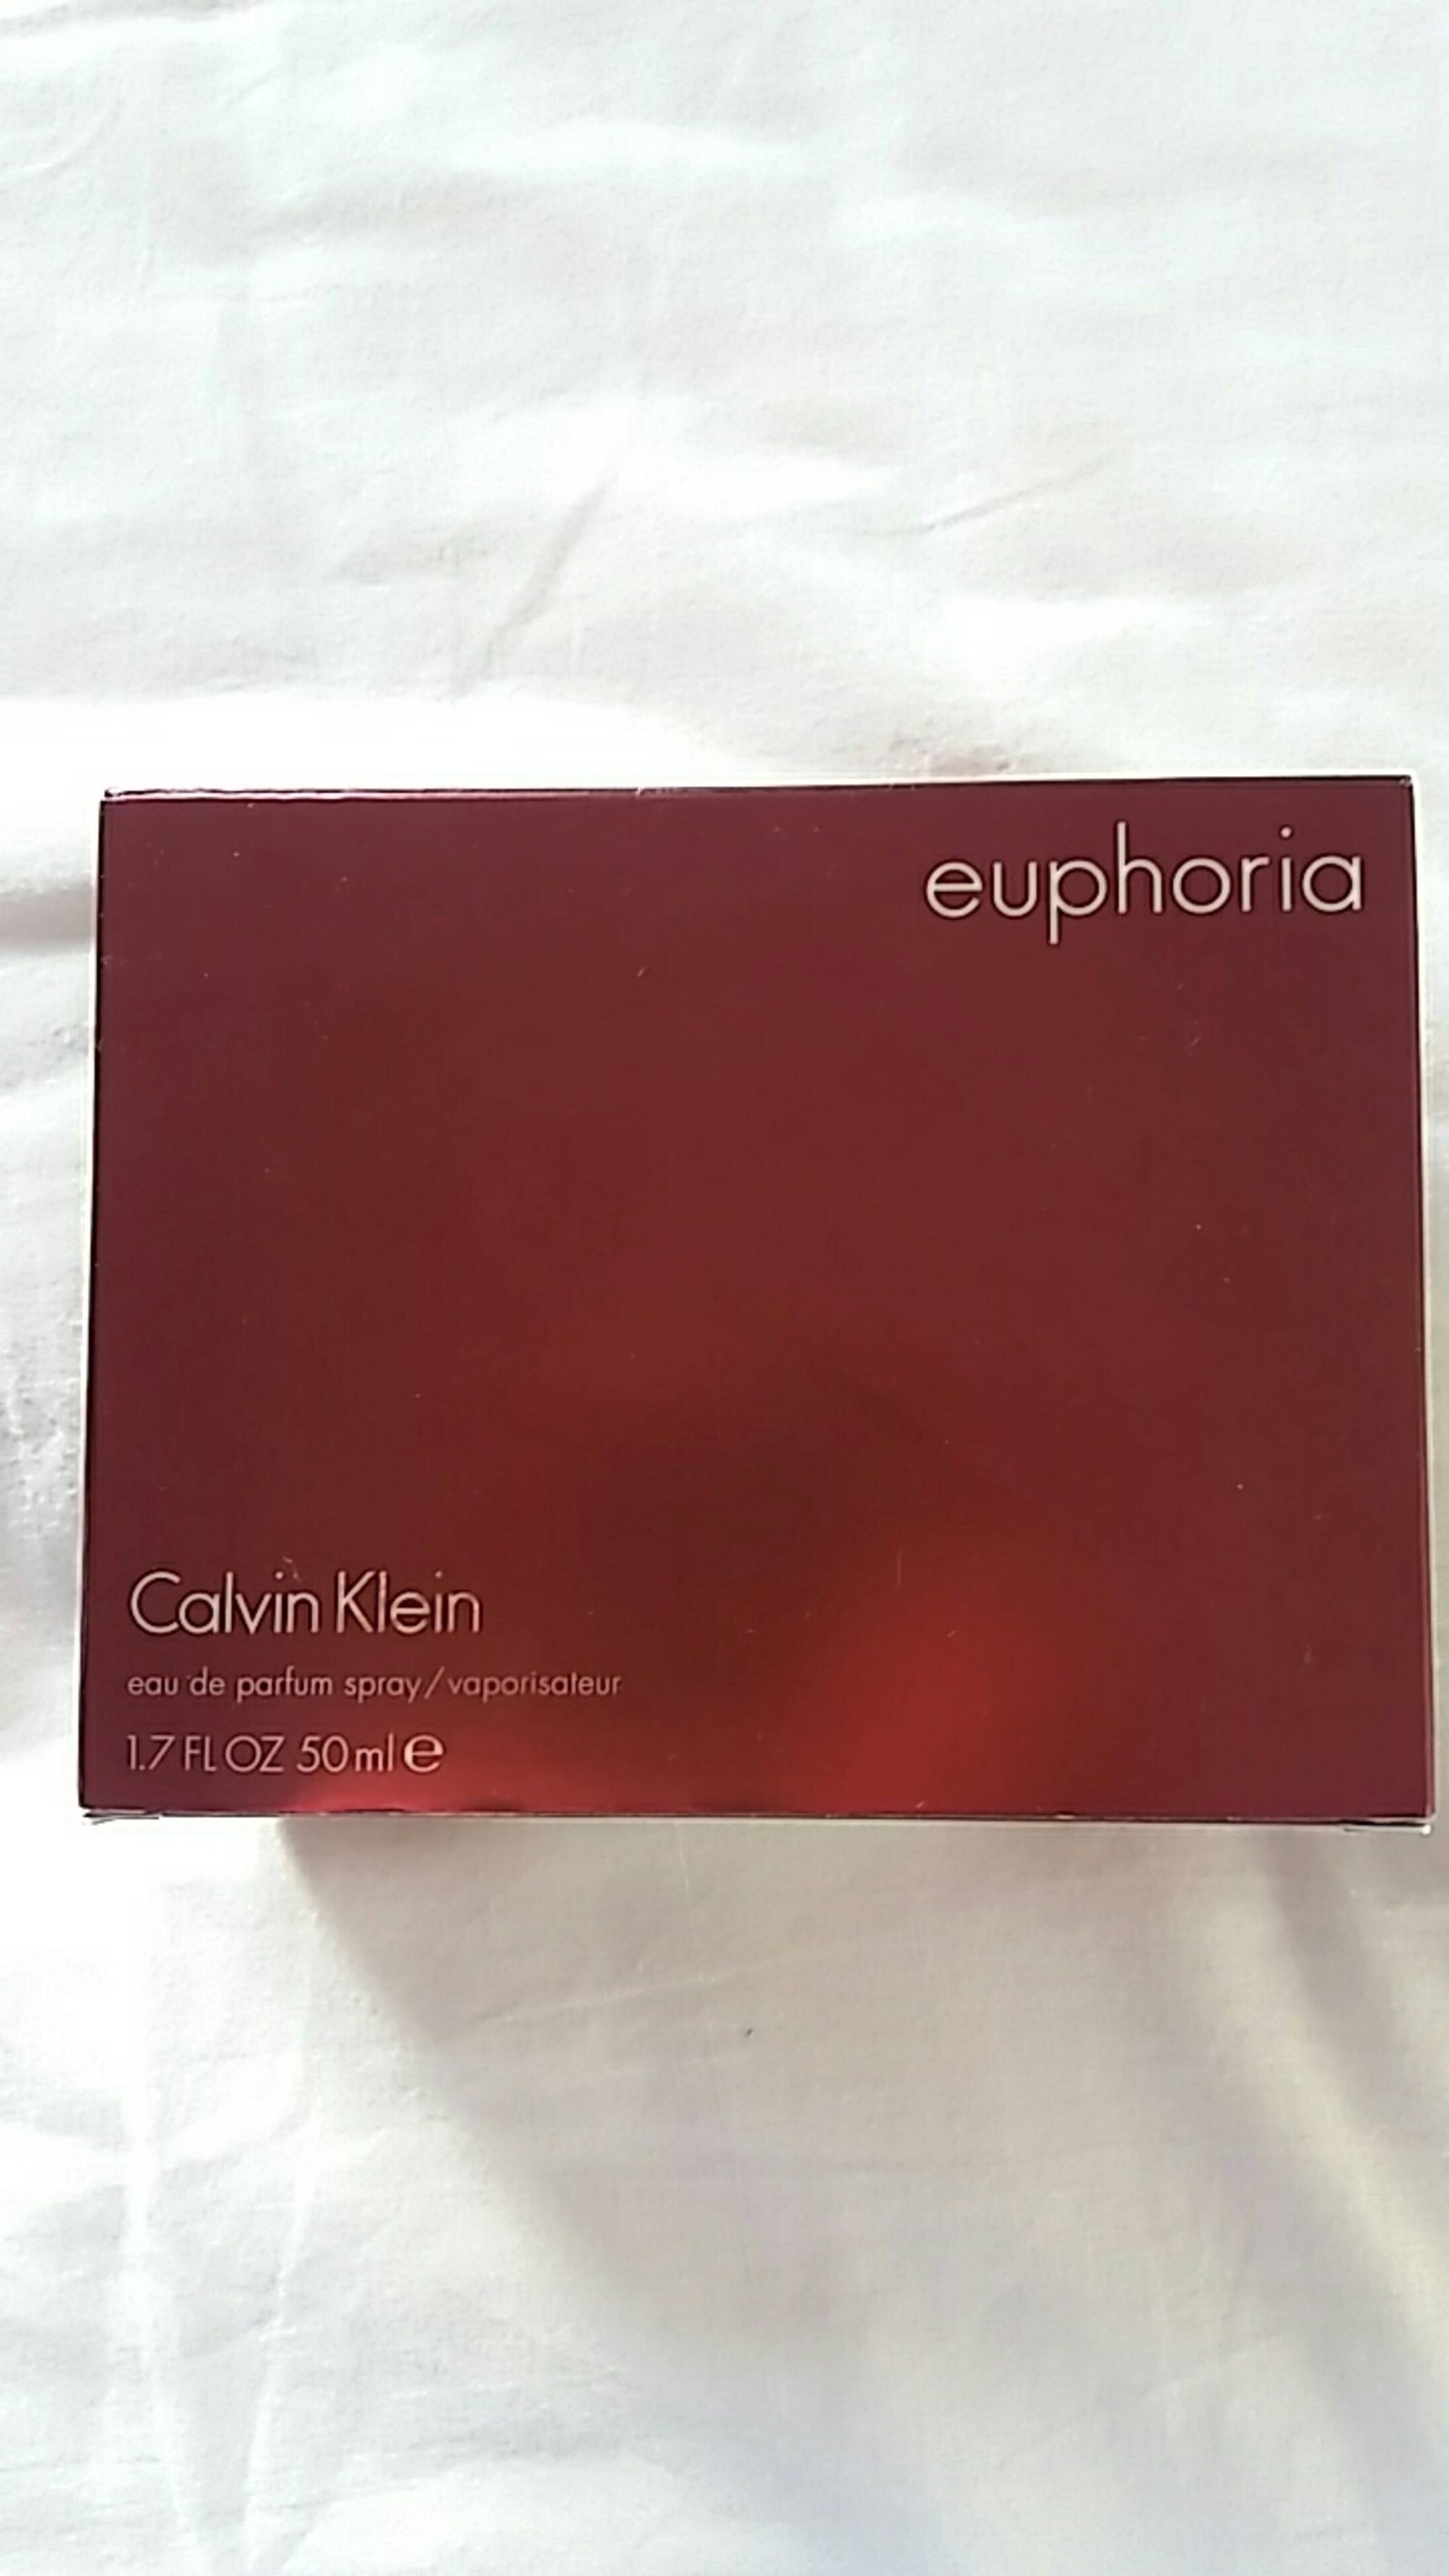 CALVIN KLEIN - Euphoria - Eau de parfum